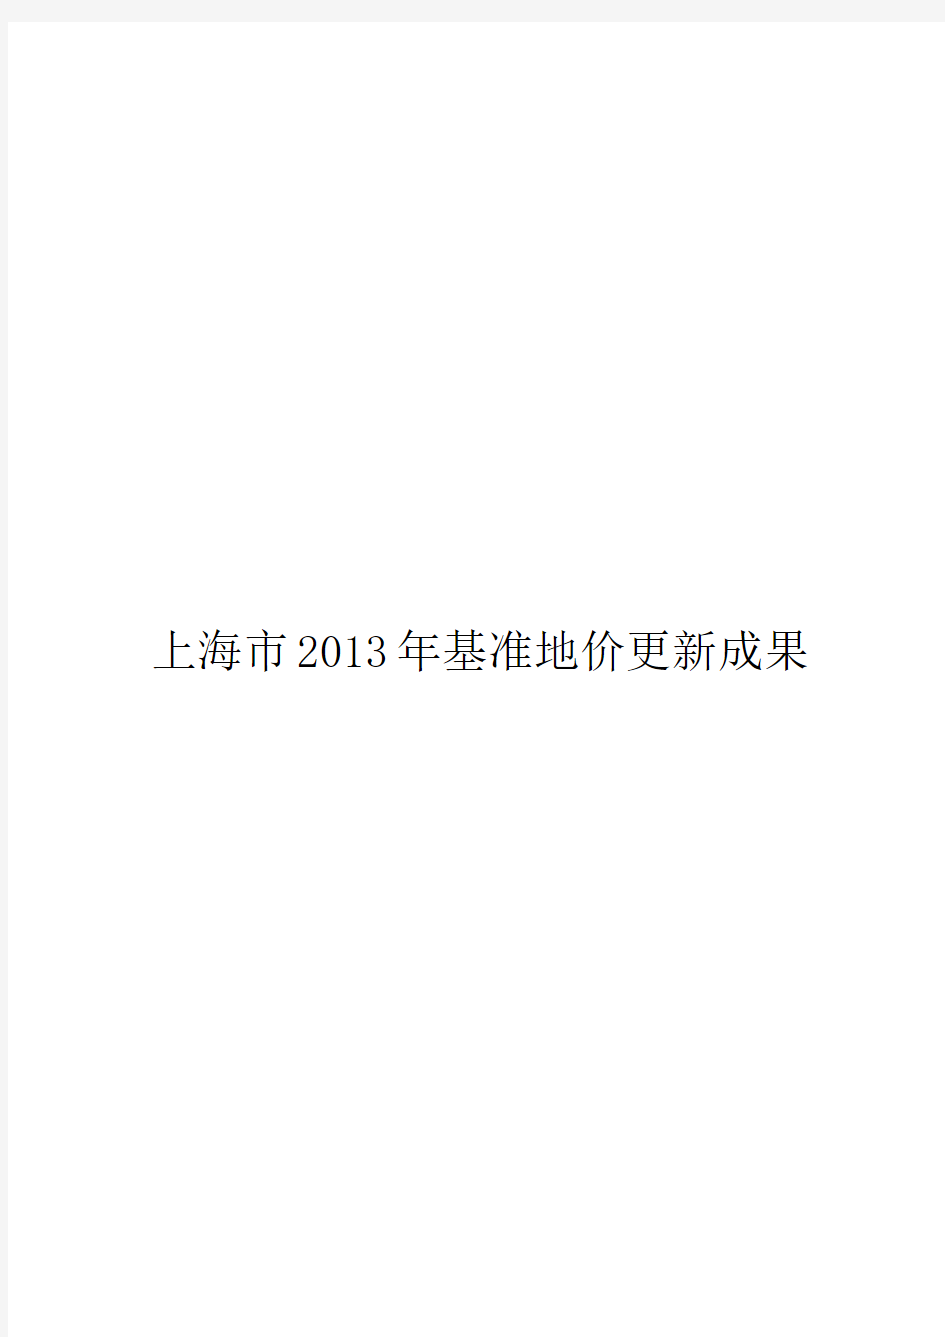 上海市2013年基准地价更新成果